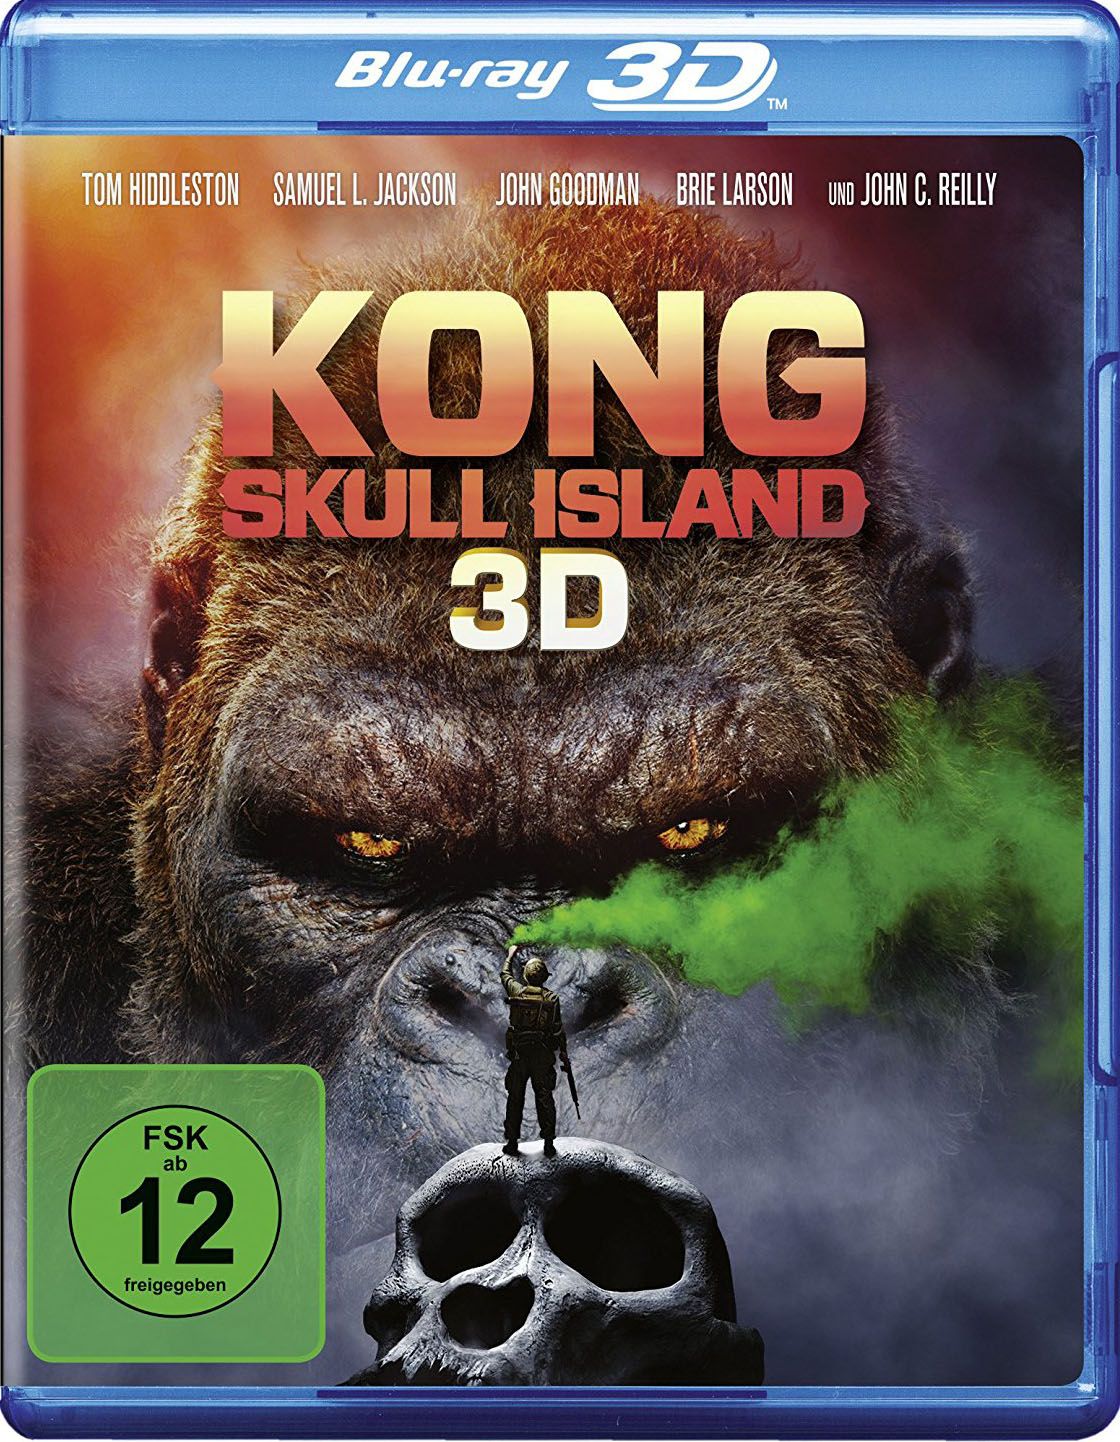 Kong: Skull Island 3D (BLURAY 3D)